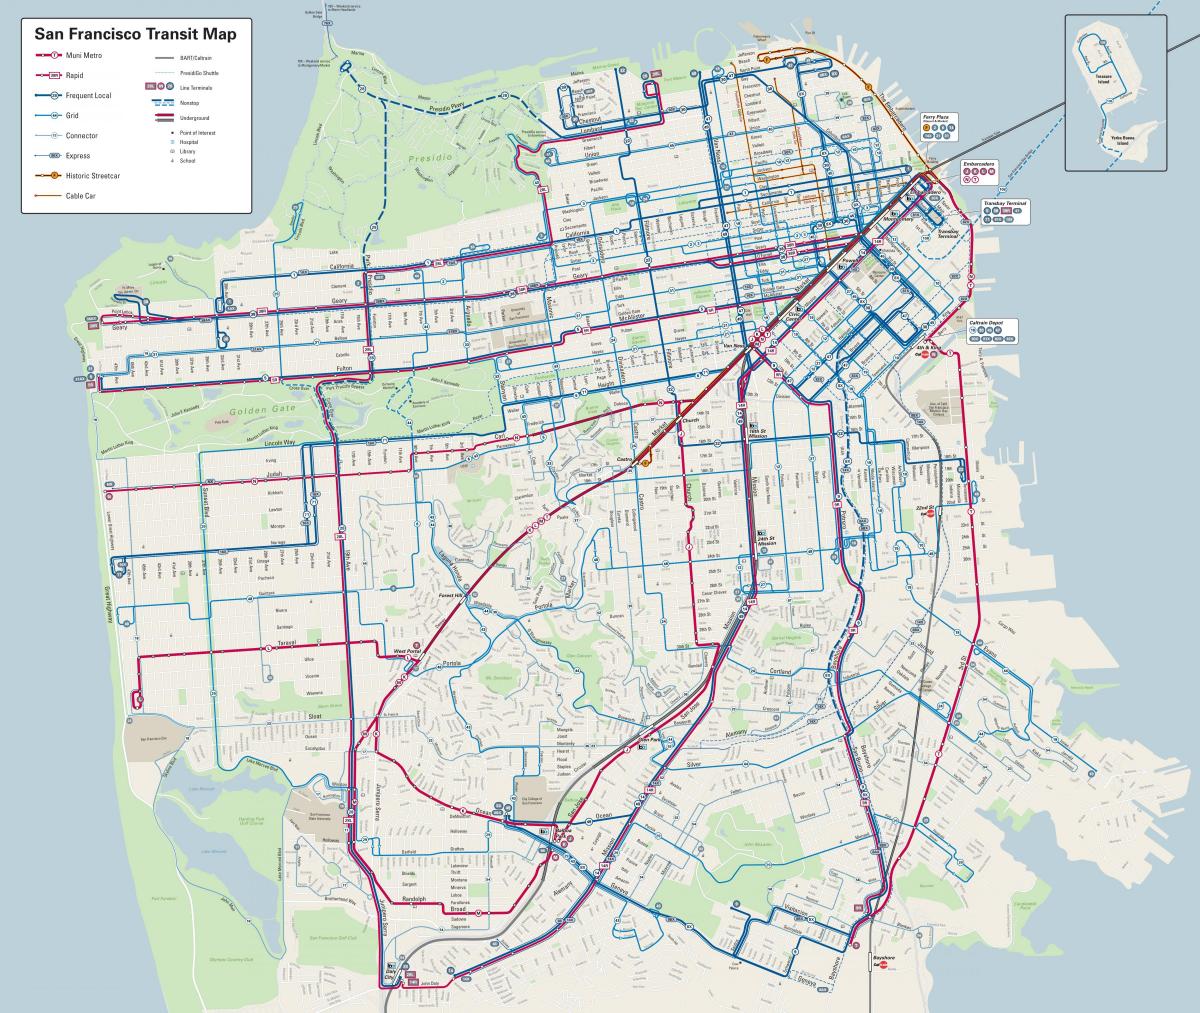 San Francisco ავტობუსის ხაზები რუკაზე